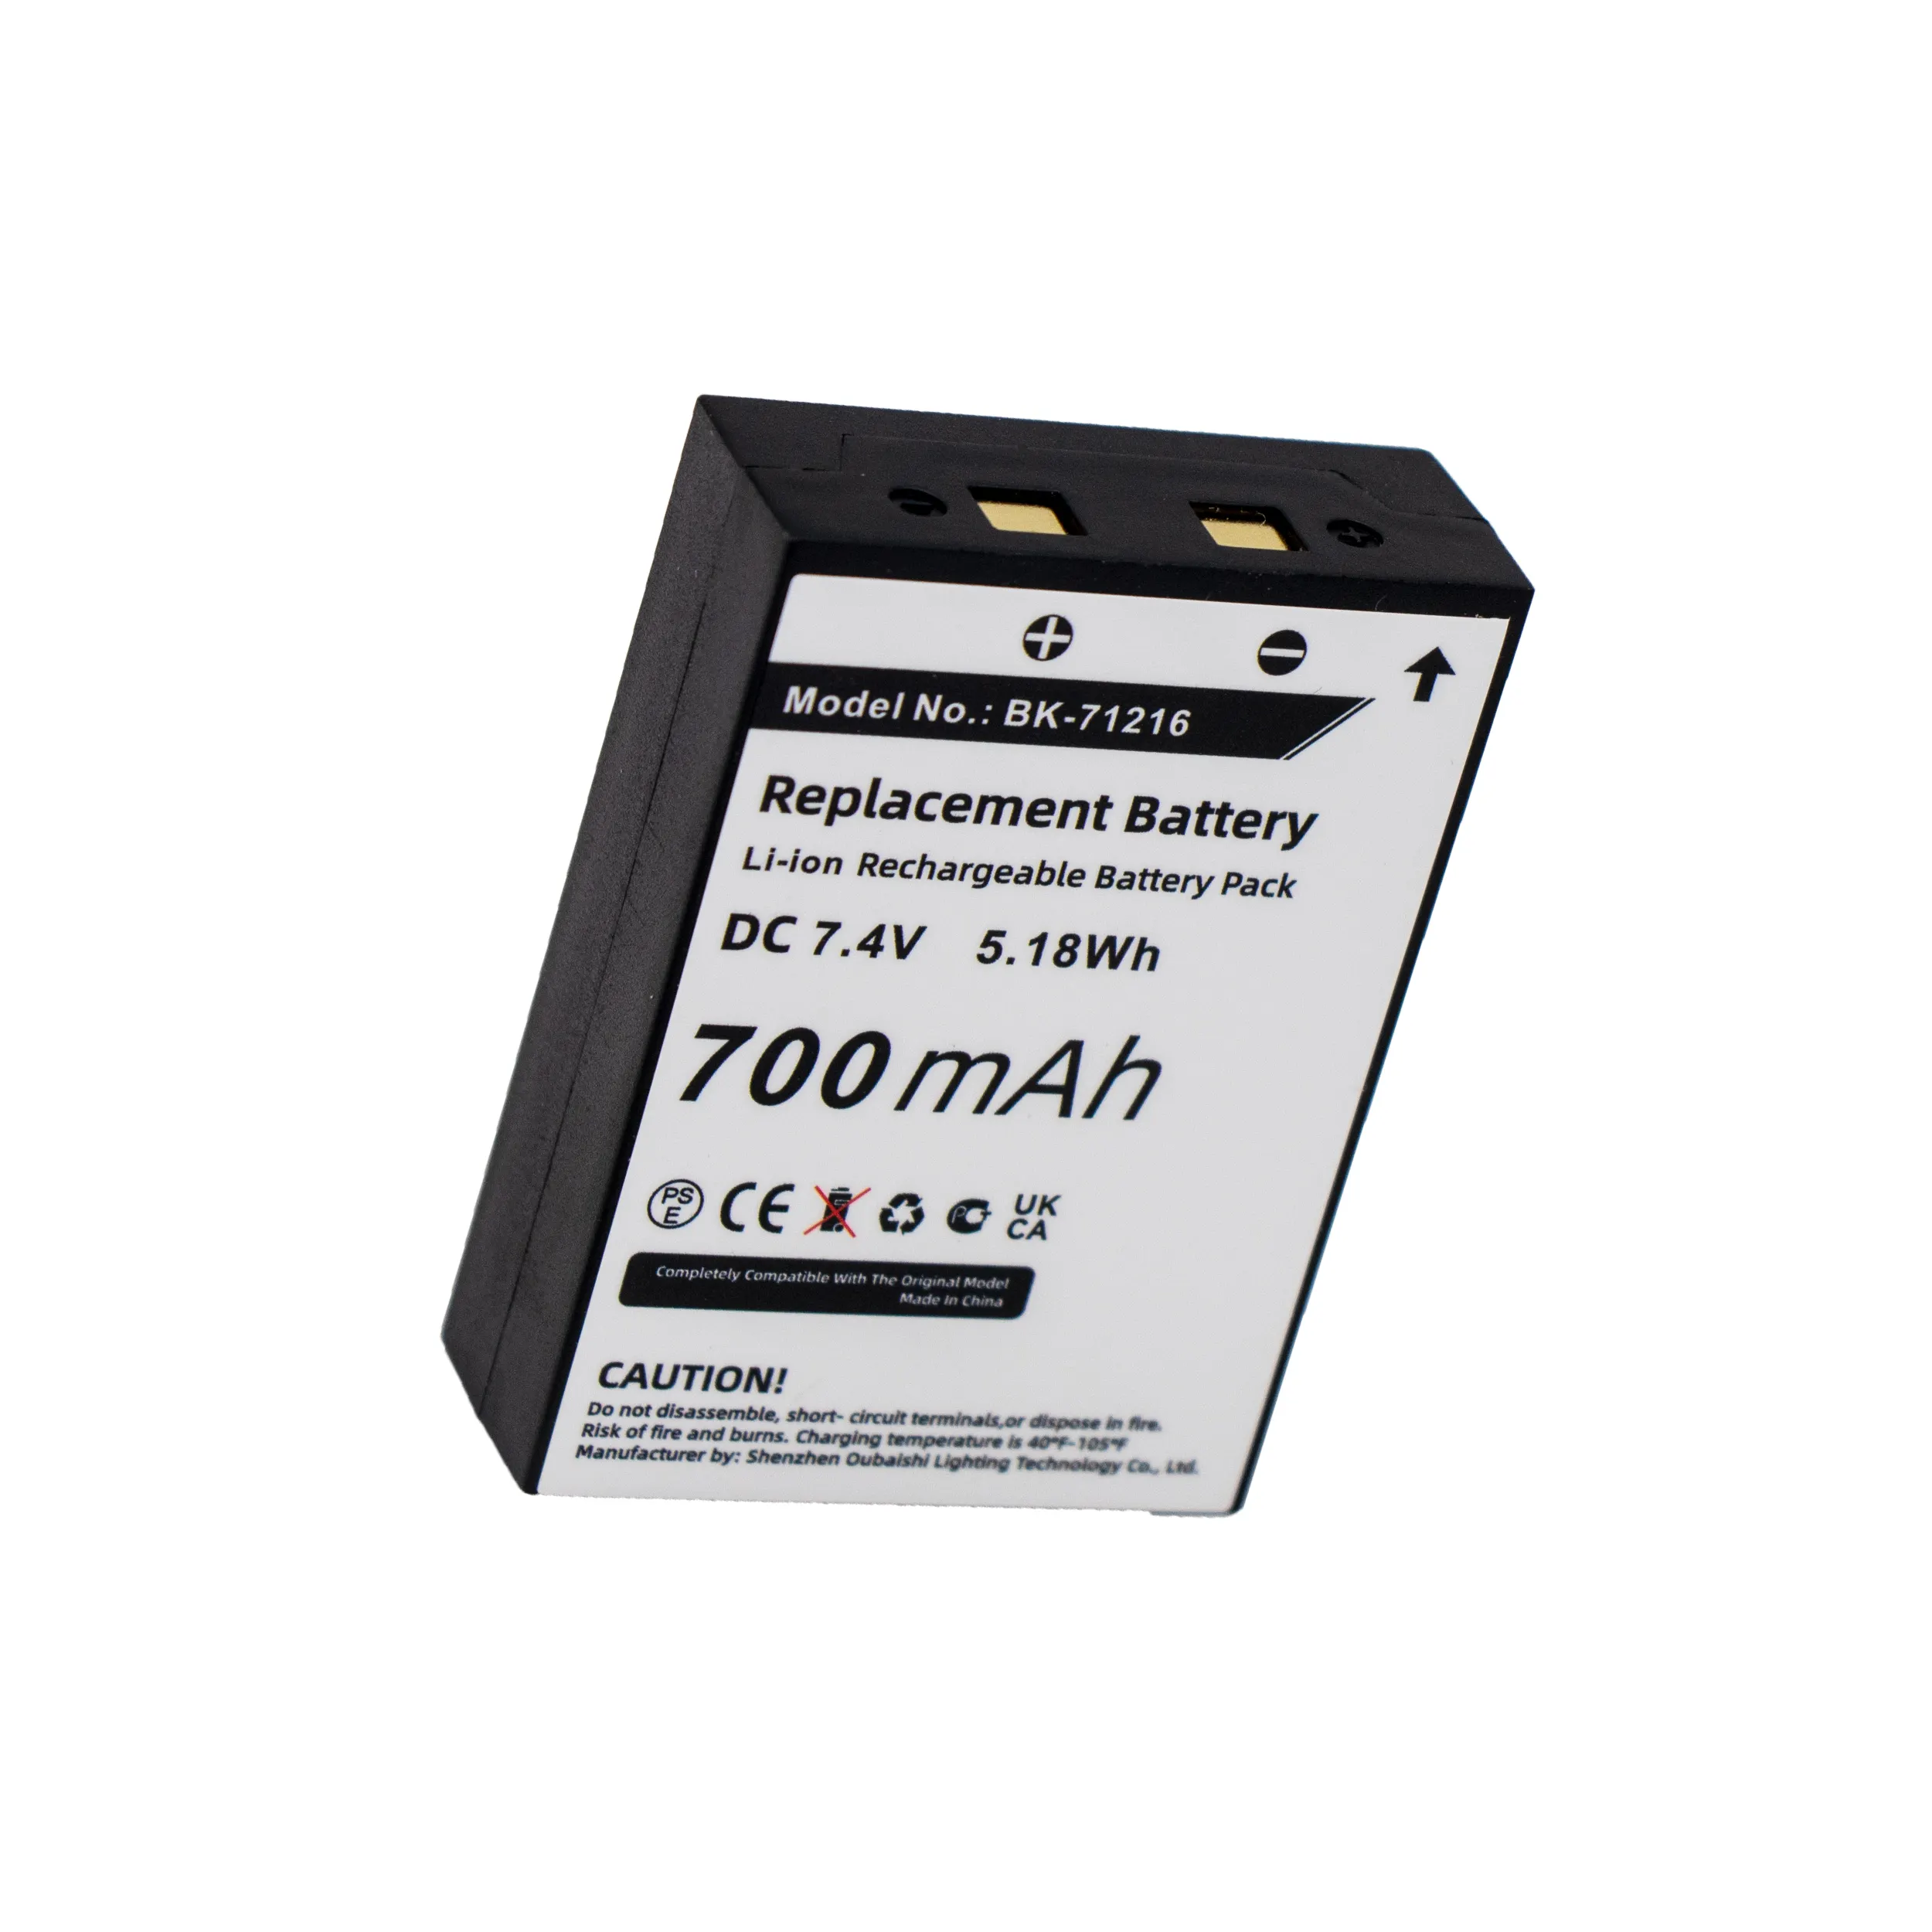 कोबरा LI3900 LI3950 LI4900 LI5600 LI6000 LI6050 LI6500 LI6700 MN-0160001 700mAh के लिए रिप्लेसमेंट बैटरी